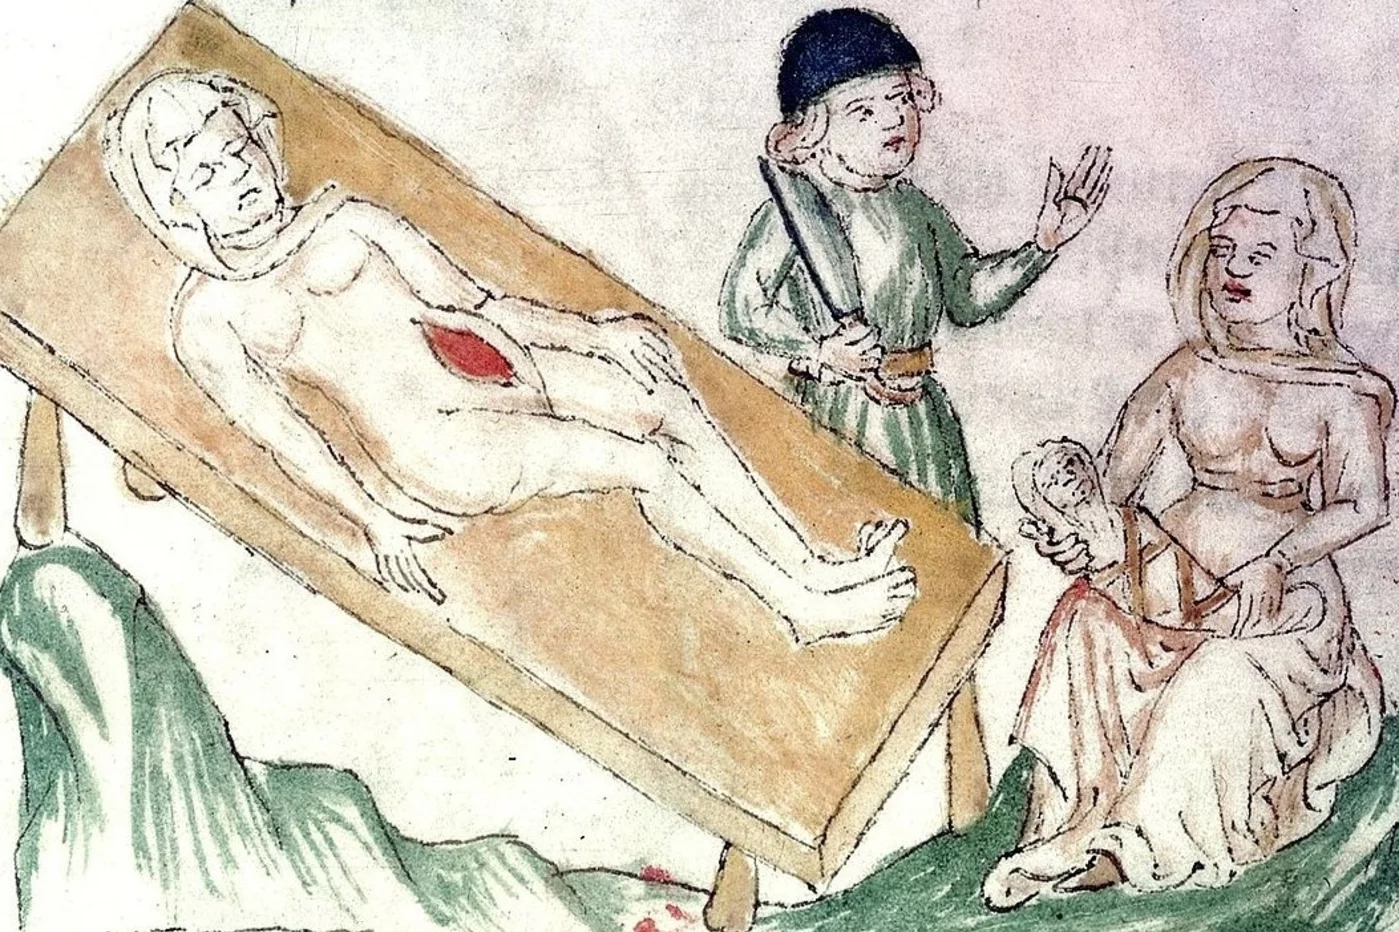 Representación medieval de una operación cesárea. [Imagen tomada de Old Book Illustrations]